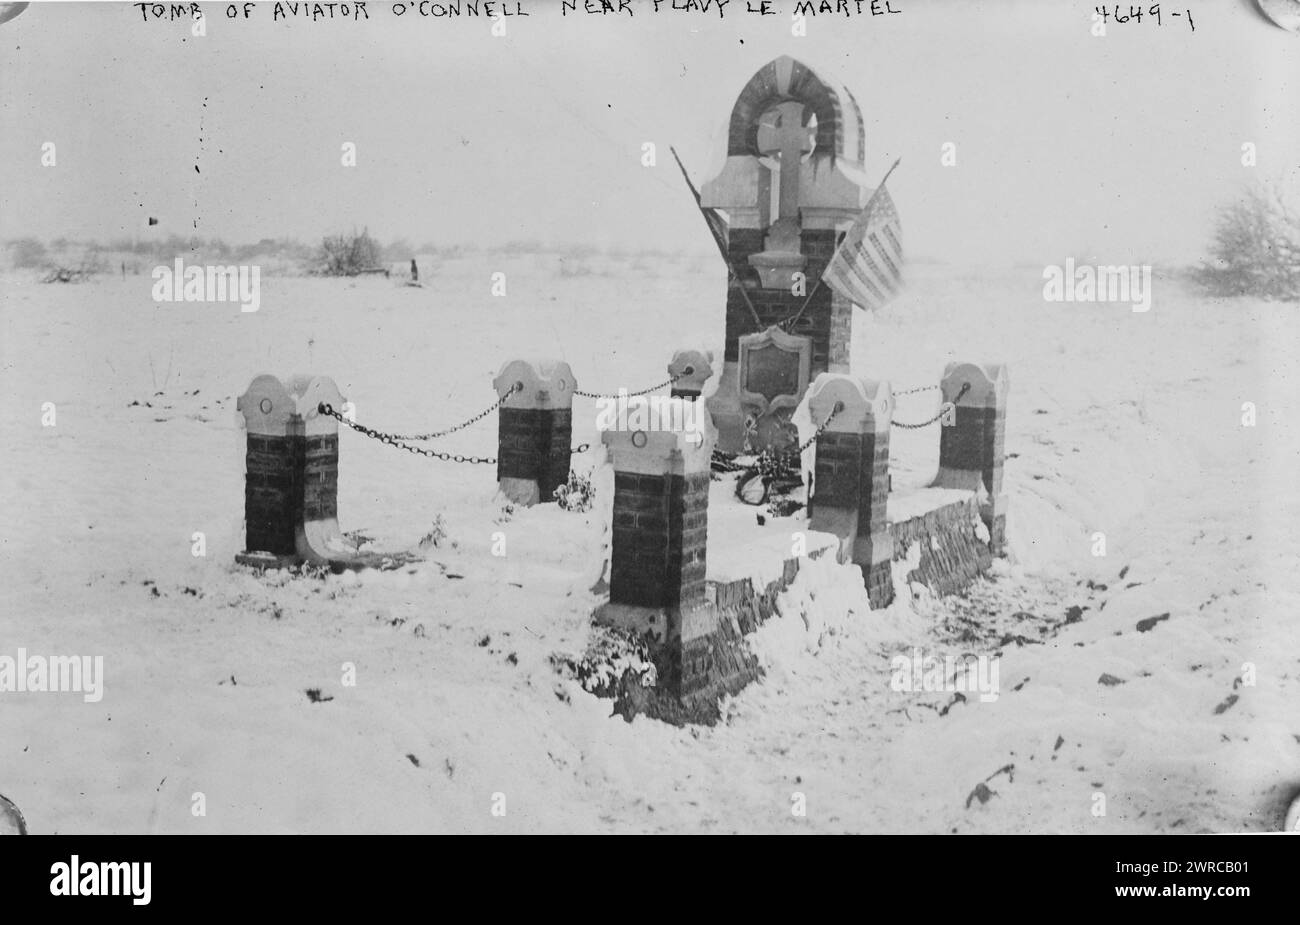 Tomba dell'aviatore o'Connell vicino a Flavy le Martel, la fotografia mostra la tomba dell'aviatore James Rogers McConnell (1887-1917) a Jussy, Francia. McConnell volò come parte della Lafayette Escadrille e morì durante la prima guerra mondiale, tra il 1917 e ca. 1925, Guerra Mondiale, 1914-1918, Glass negative, 1 negativo: Vetro Foto Stock